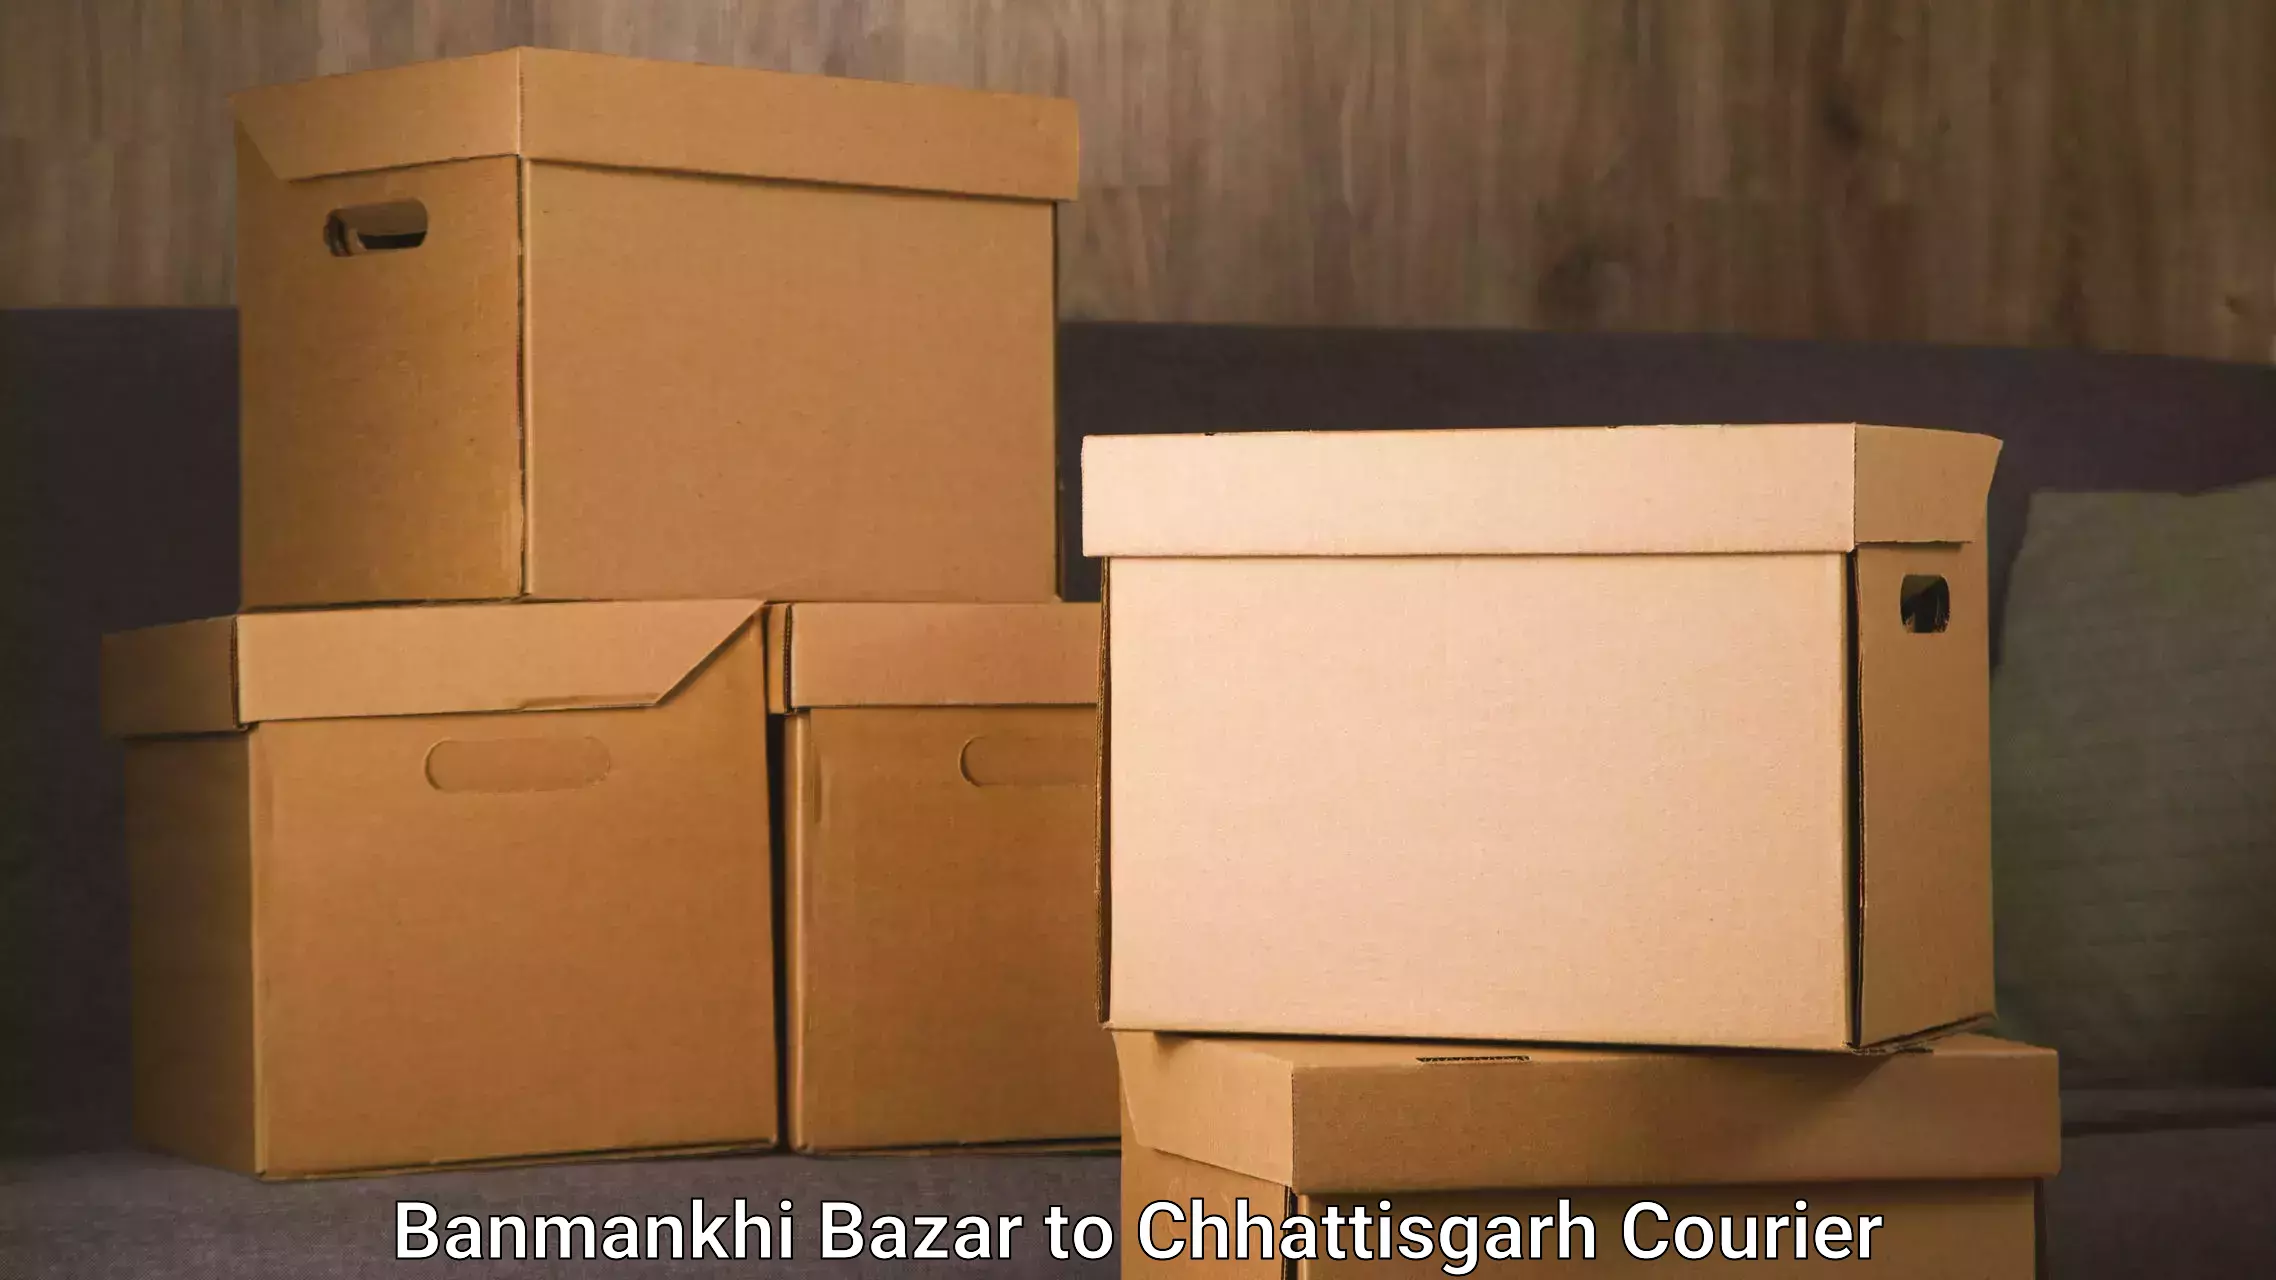 Seamless moving process Banmankhi Bazar to Bijapur Chhattisgarh